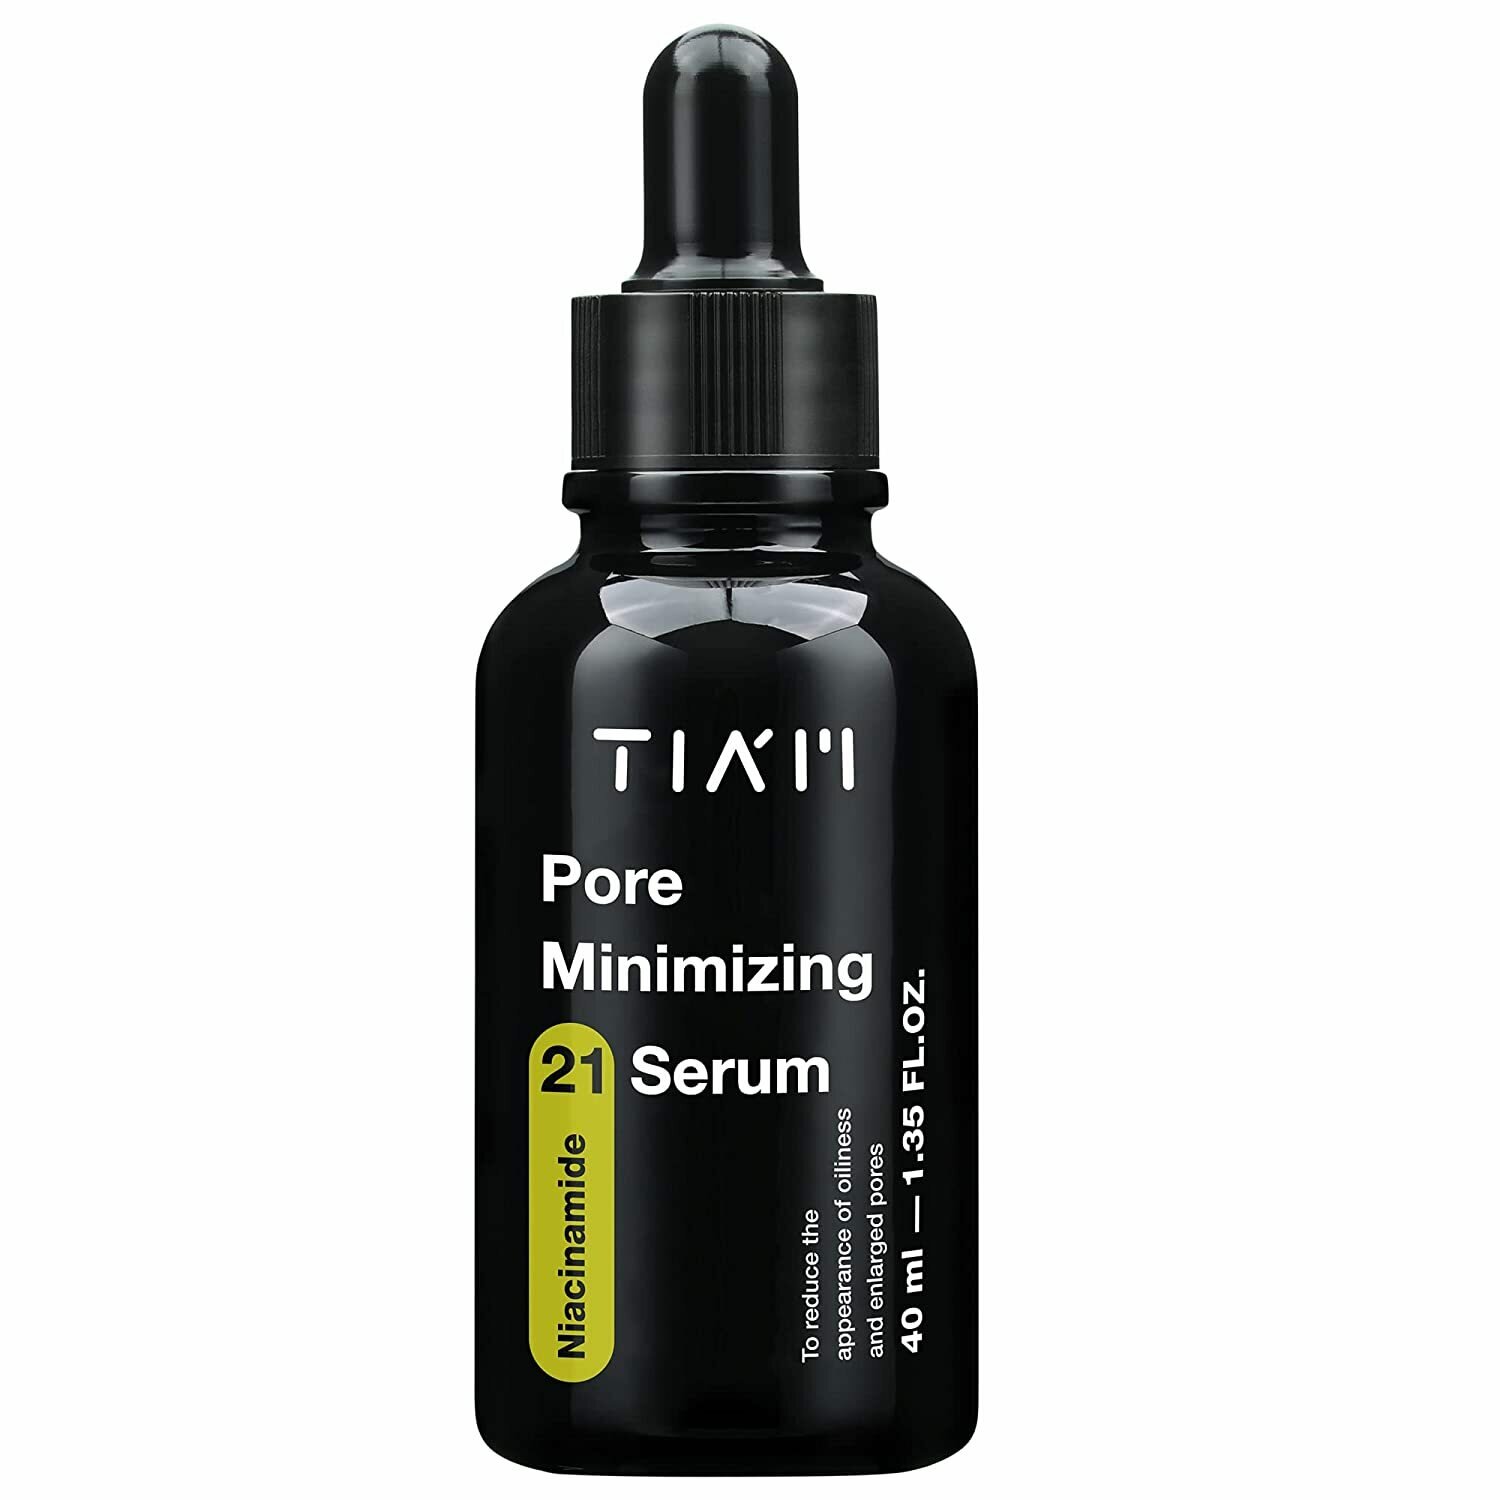 TIAM pore minimizing 21 serum - Сыворотка для сужения пор